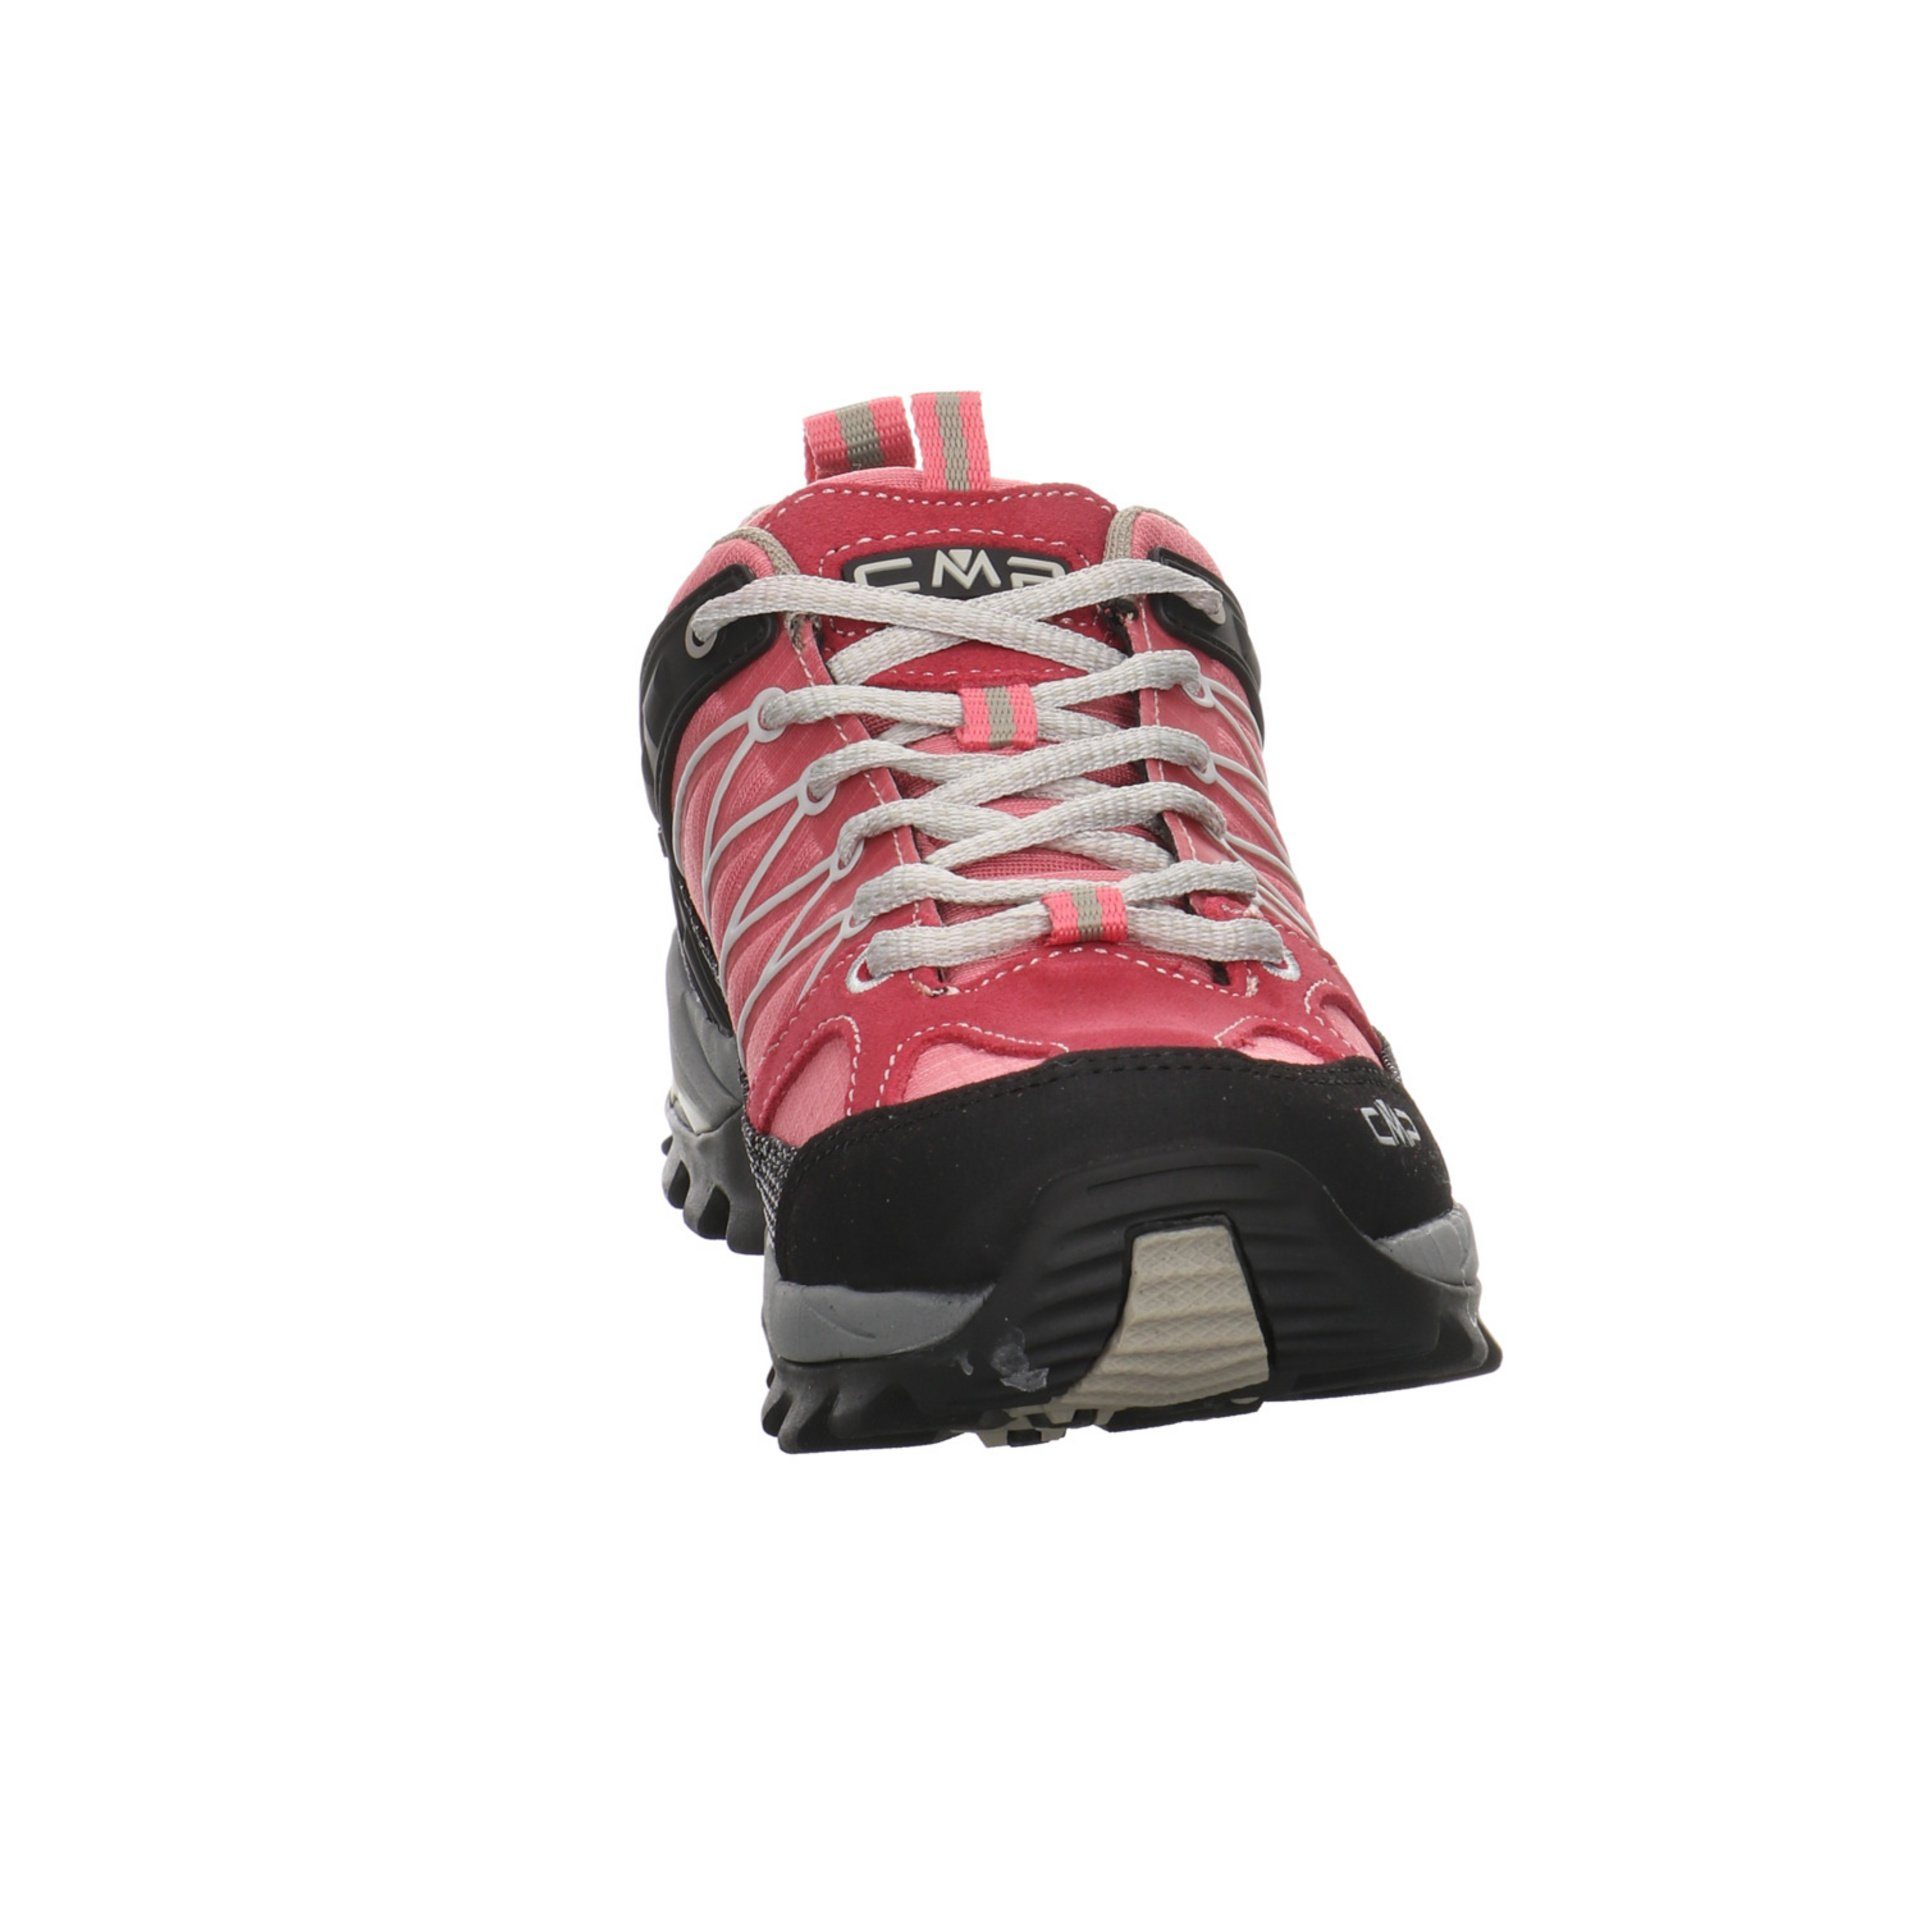 CMP Damen Schuhe Outdoor Rigel Low Outdoorschuh rot+lila Leder-/Textilkombination kombi-schwa Outdoorschuh